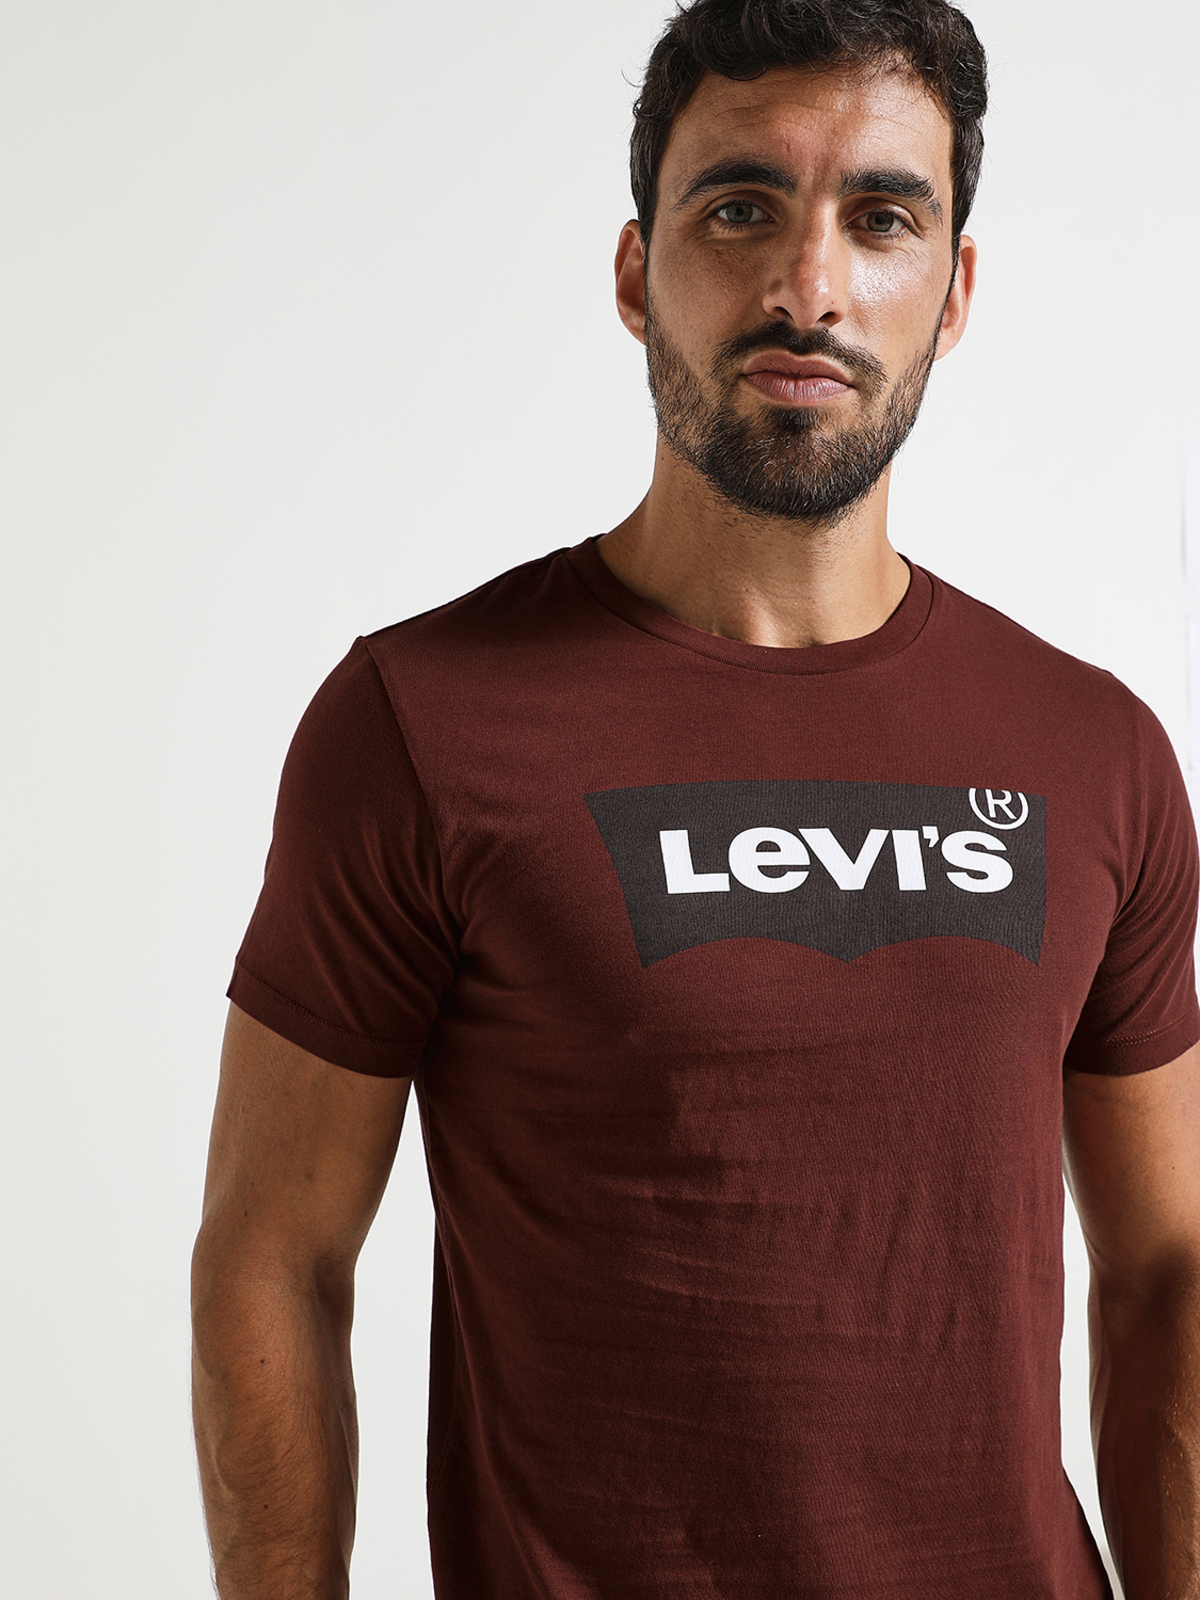 Levi's - T-shirt avec étiquette logo encadrée - Bordeaux